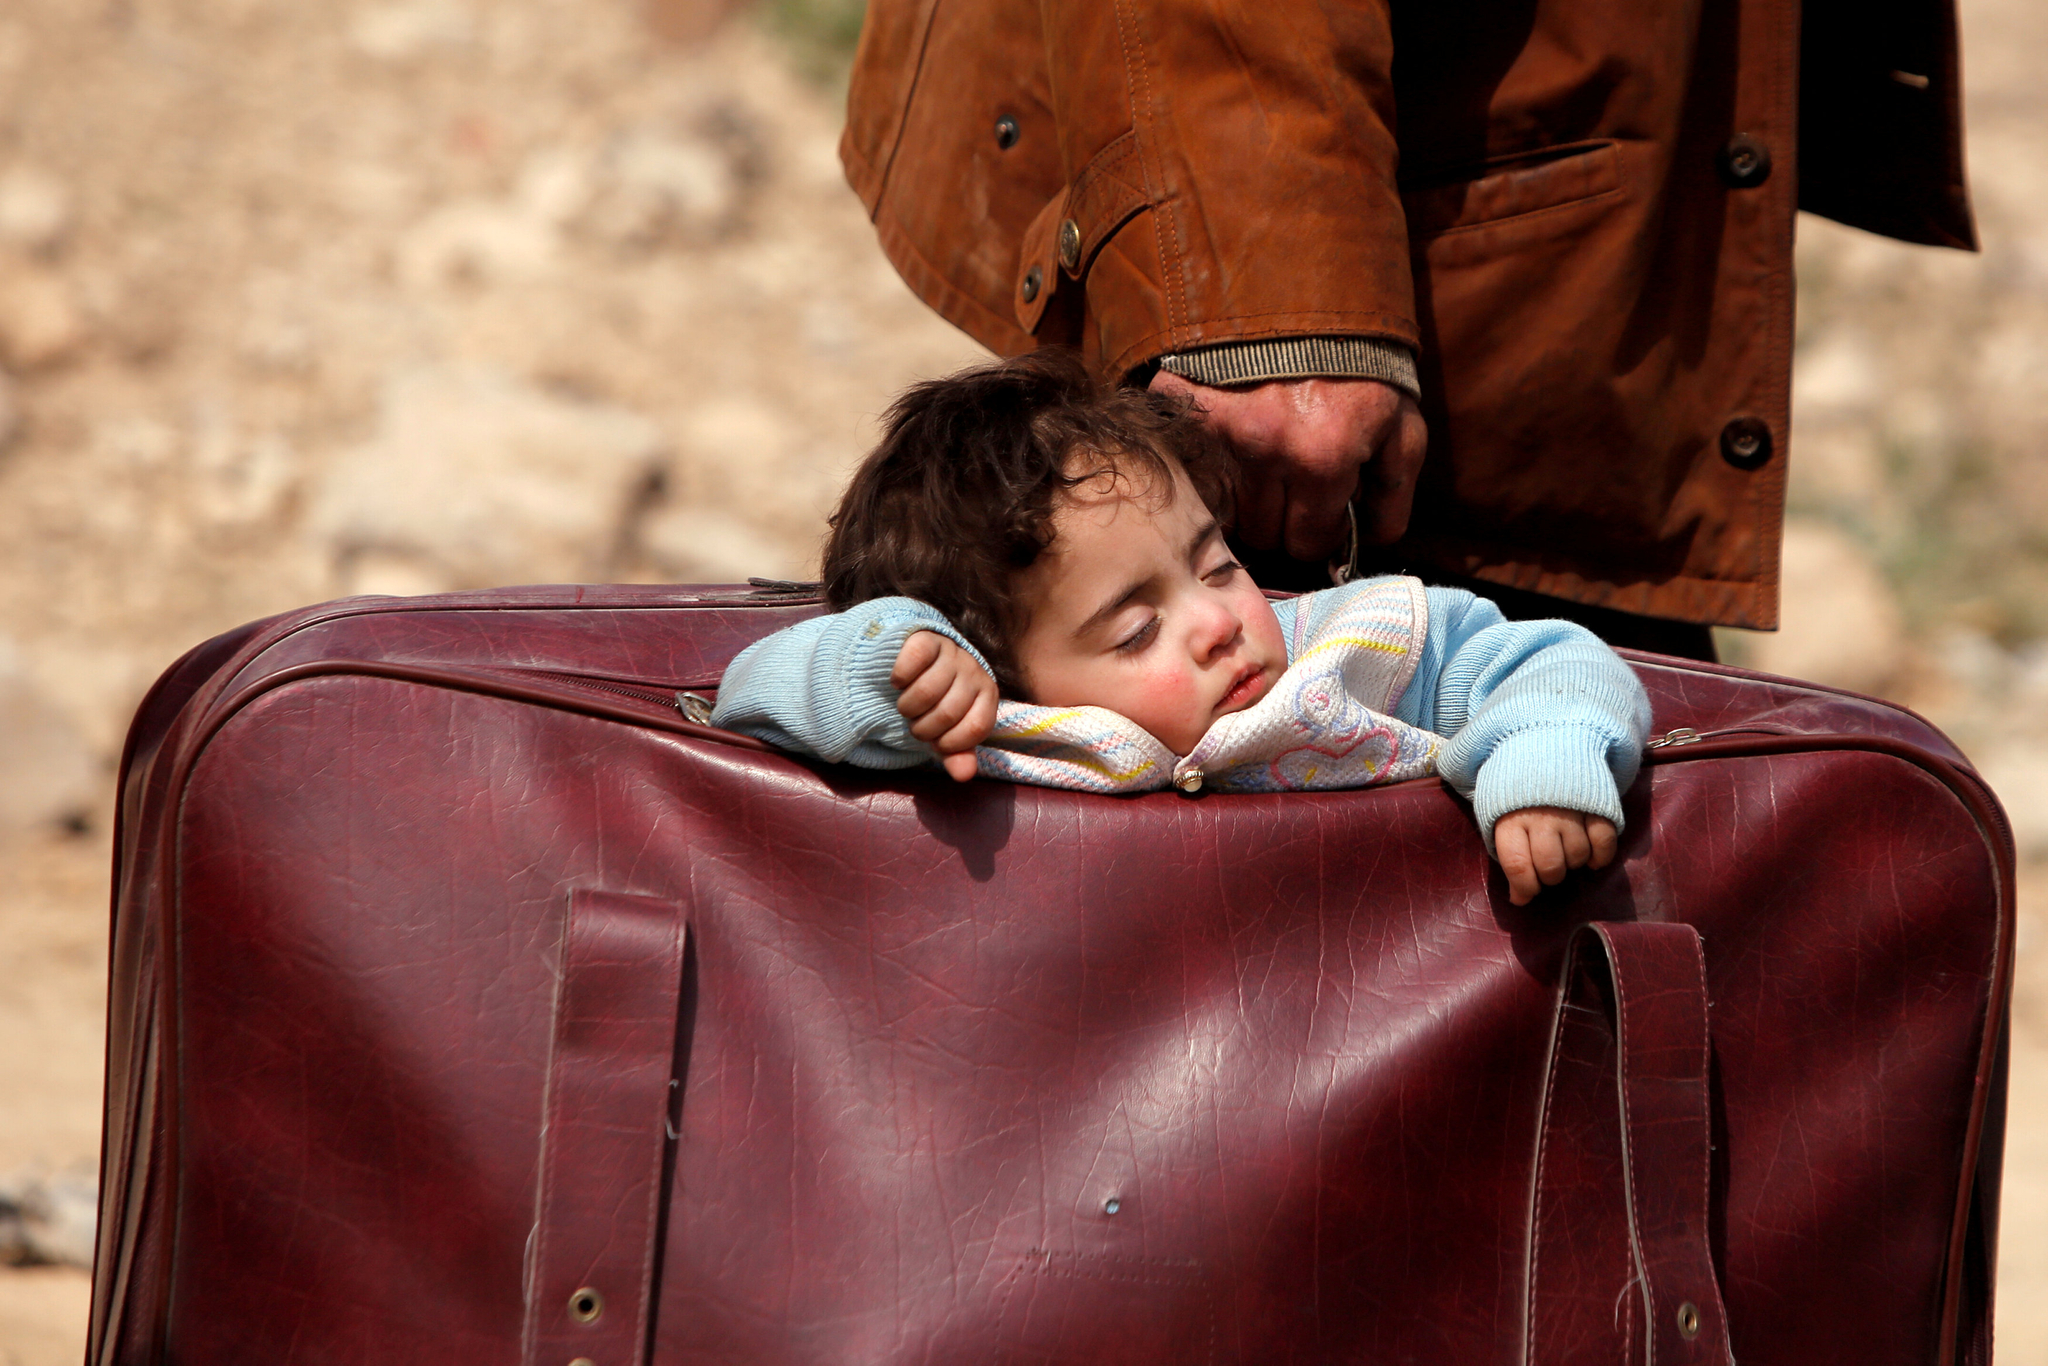 시리아의 동구타 베이트사와 마을에서 촬영된 사진속에 한 아이가 아이의 보호자가 든 가방속에 실려 고된 잠을 자고 있다. 시리아는 7년째 이어진 내전으로 전체 인구 2300만명의 절반인 1200만명이 전쟁 난민이 됐고, 300만명이 목숨을 잃었다. [로이터=연합뉴스]